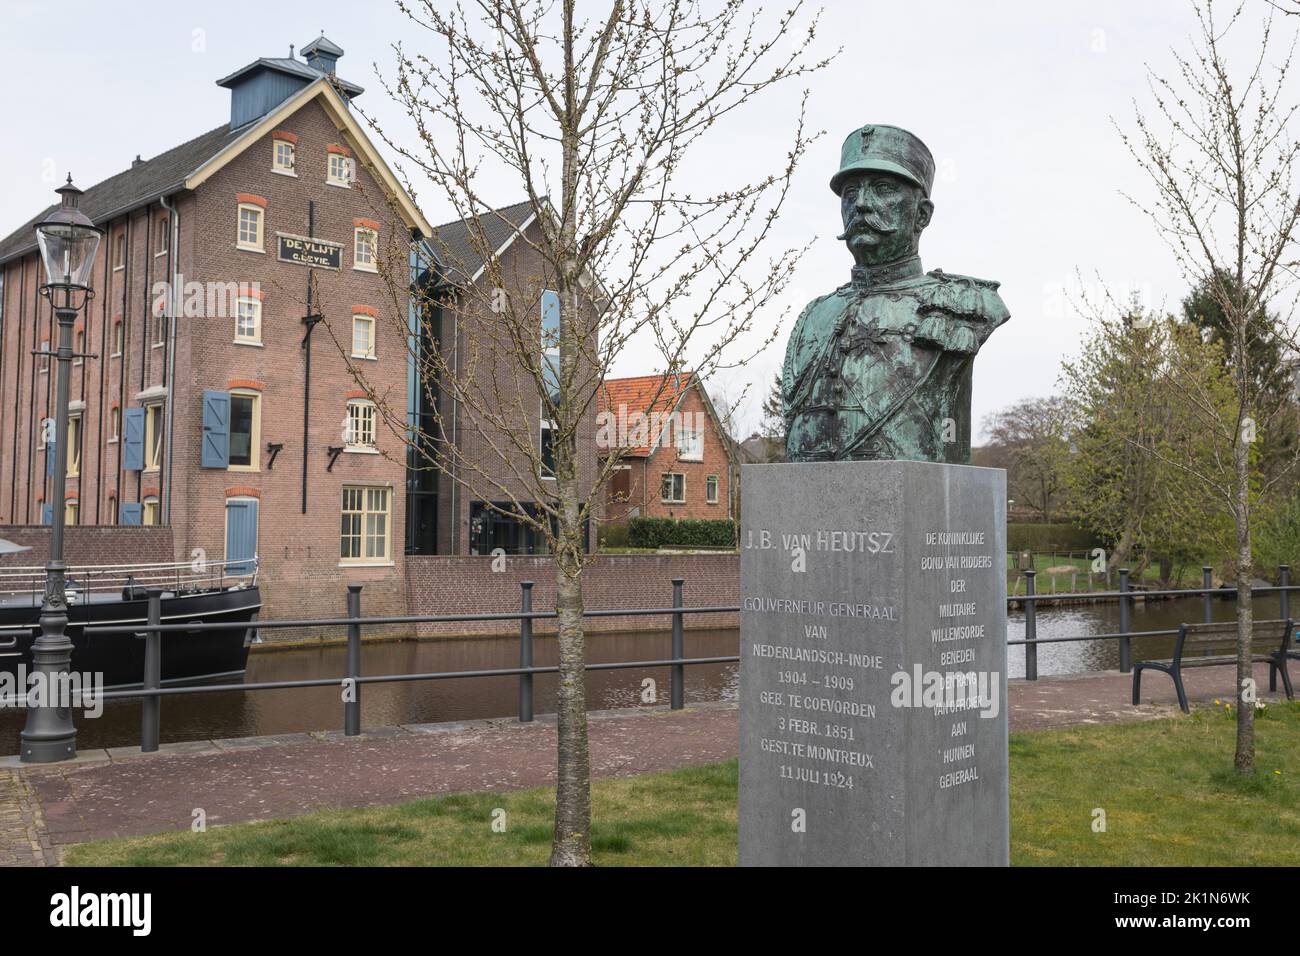 Statuette general J.B. van Heutz in the historical town of Coevorden, Netherlands Stock Photo